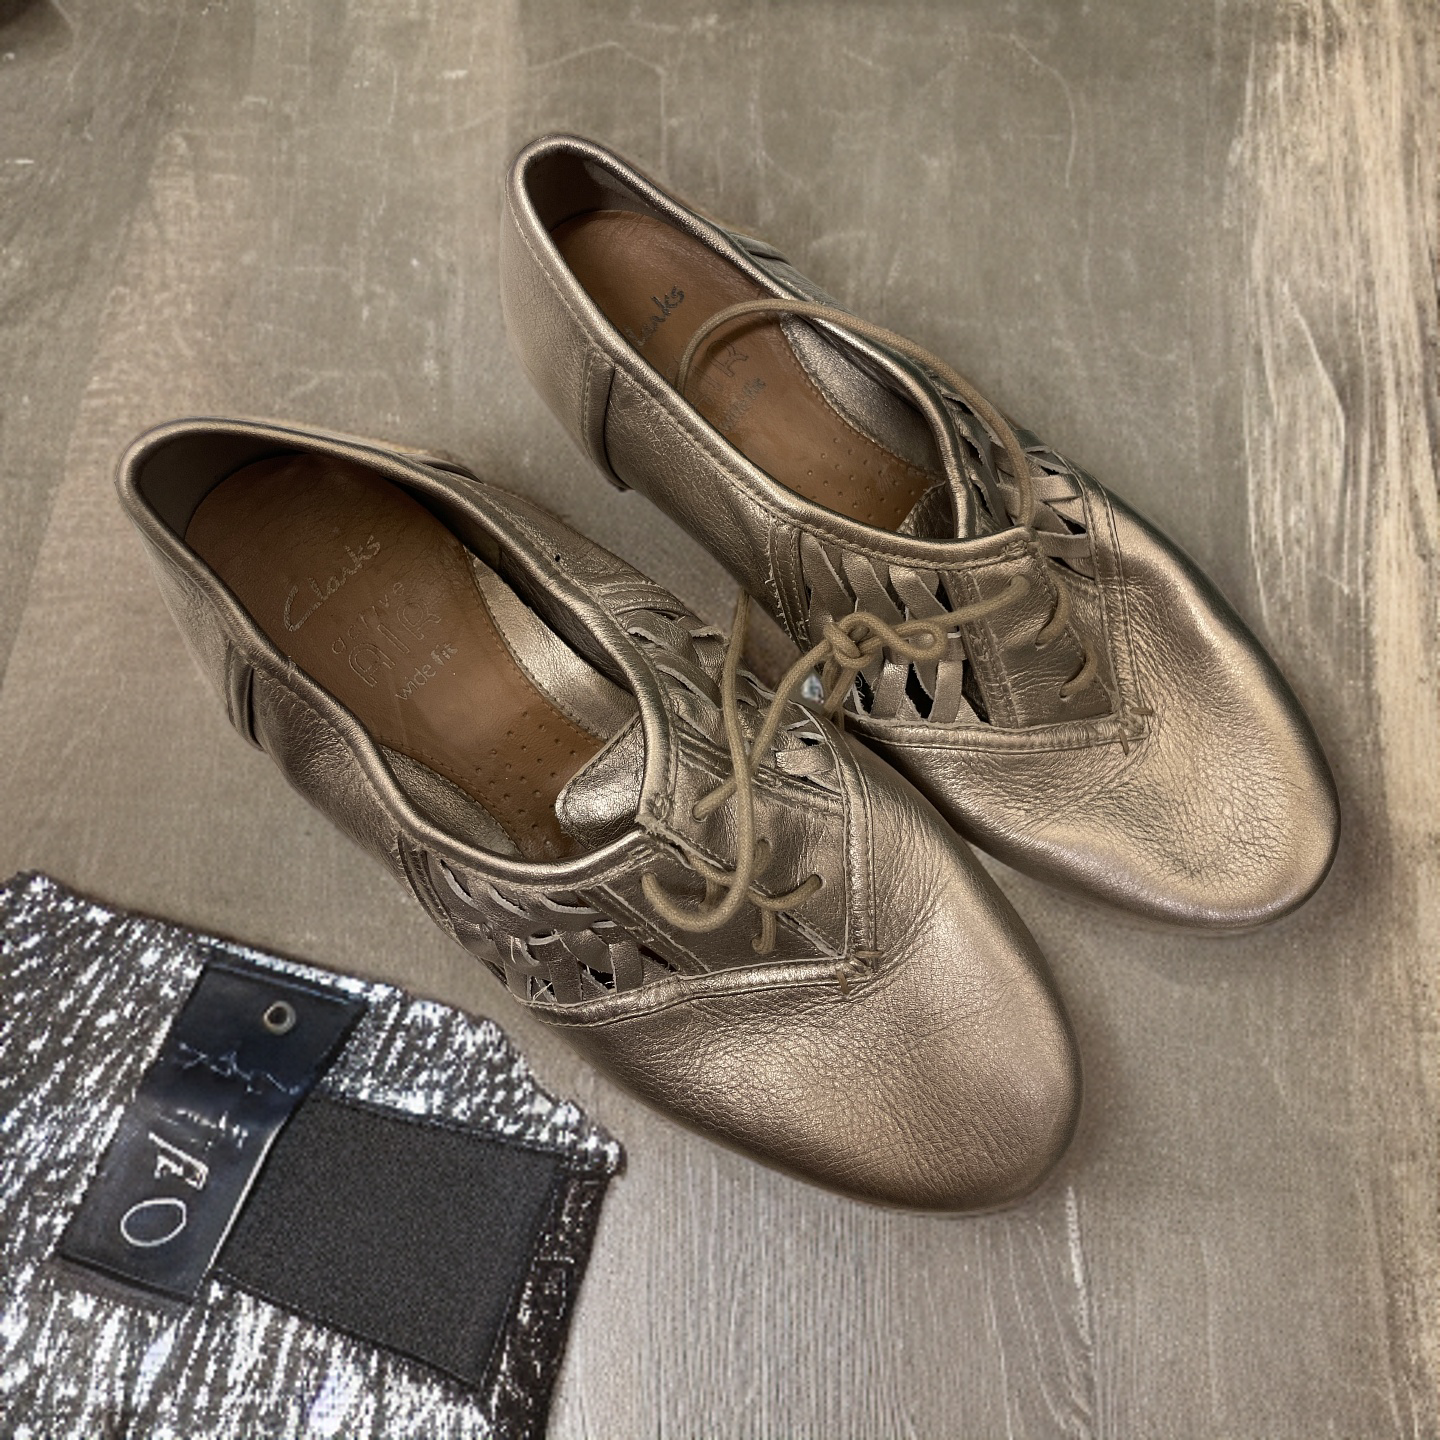 Vintage claks oxford woman lace bronze shoe size uk 5.5